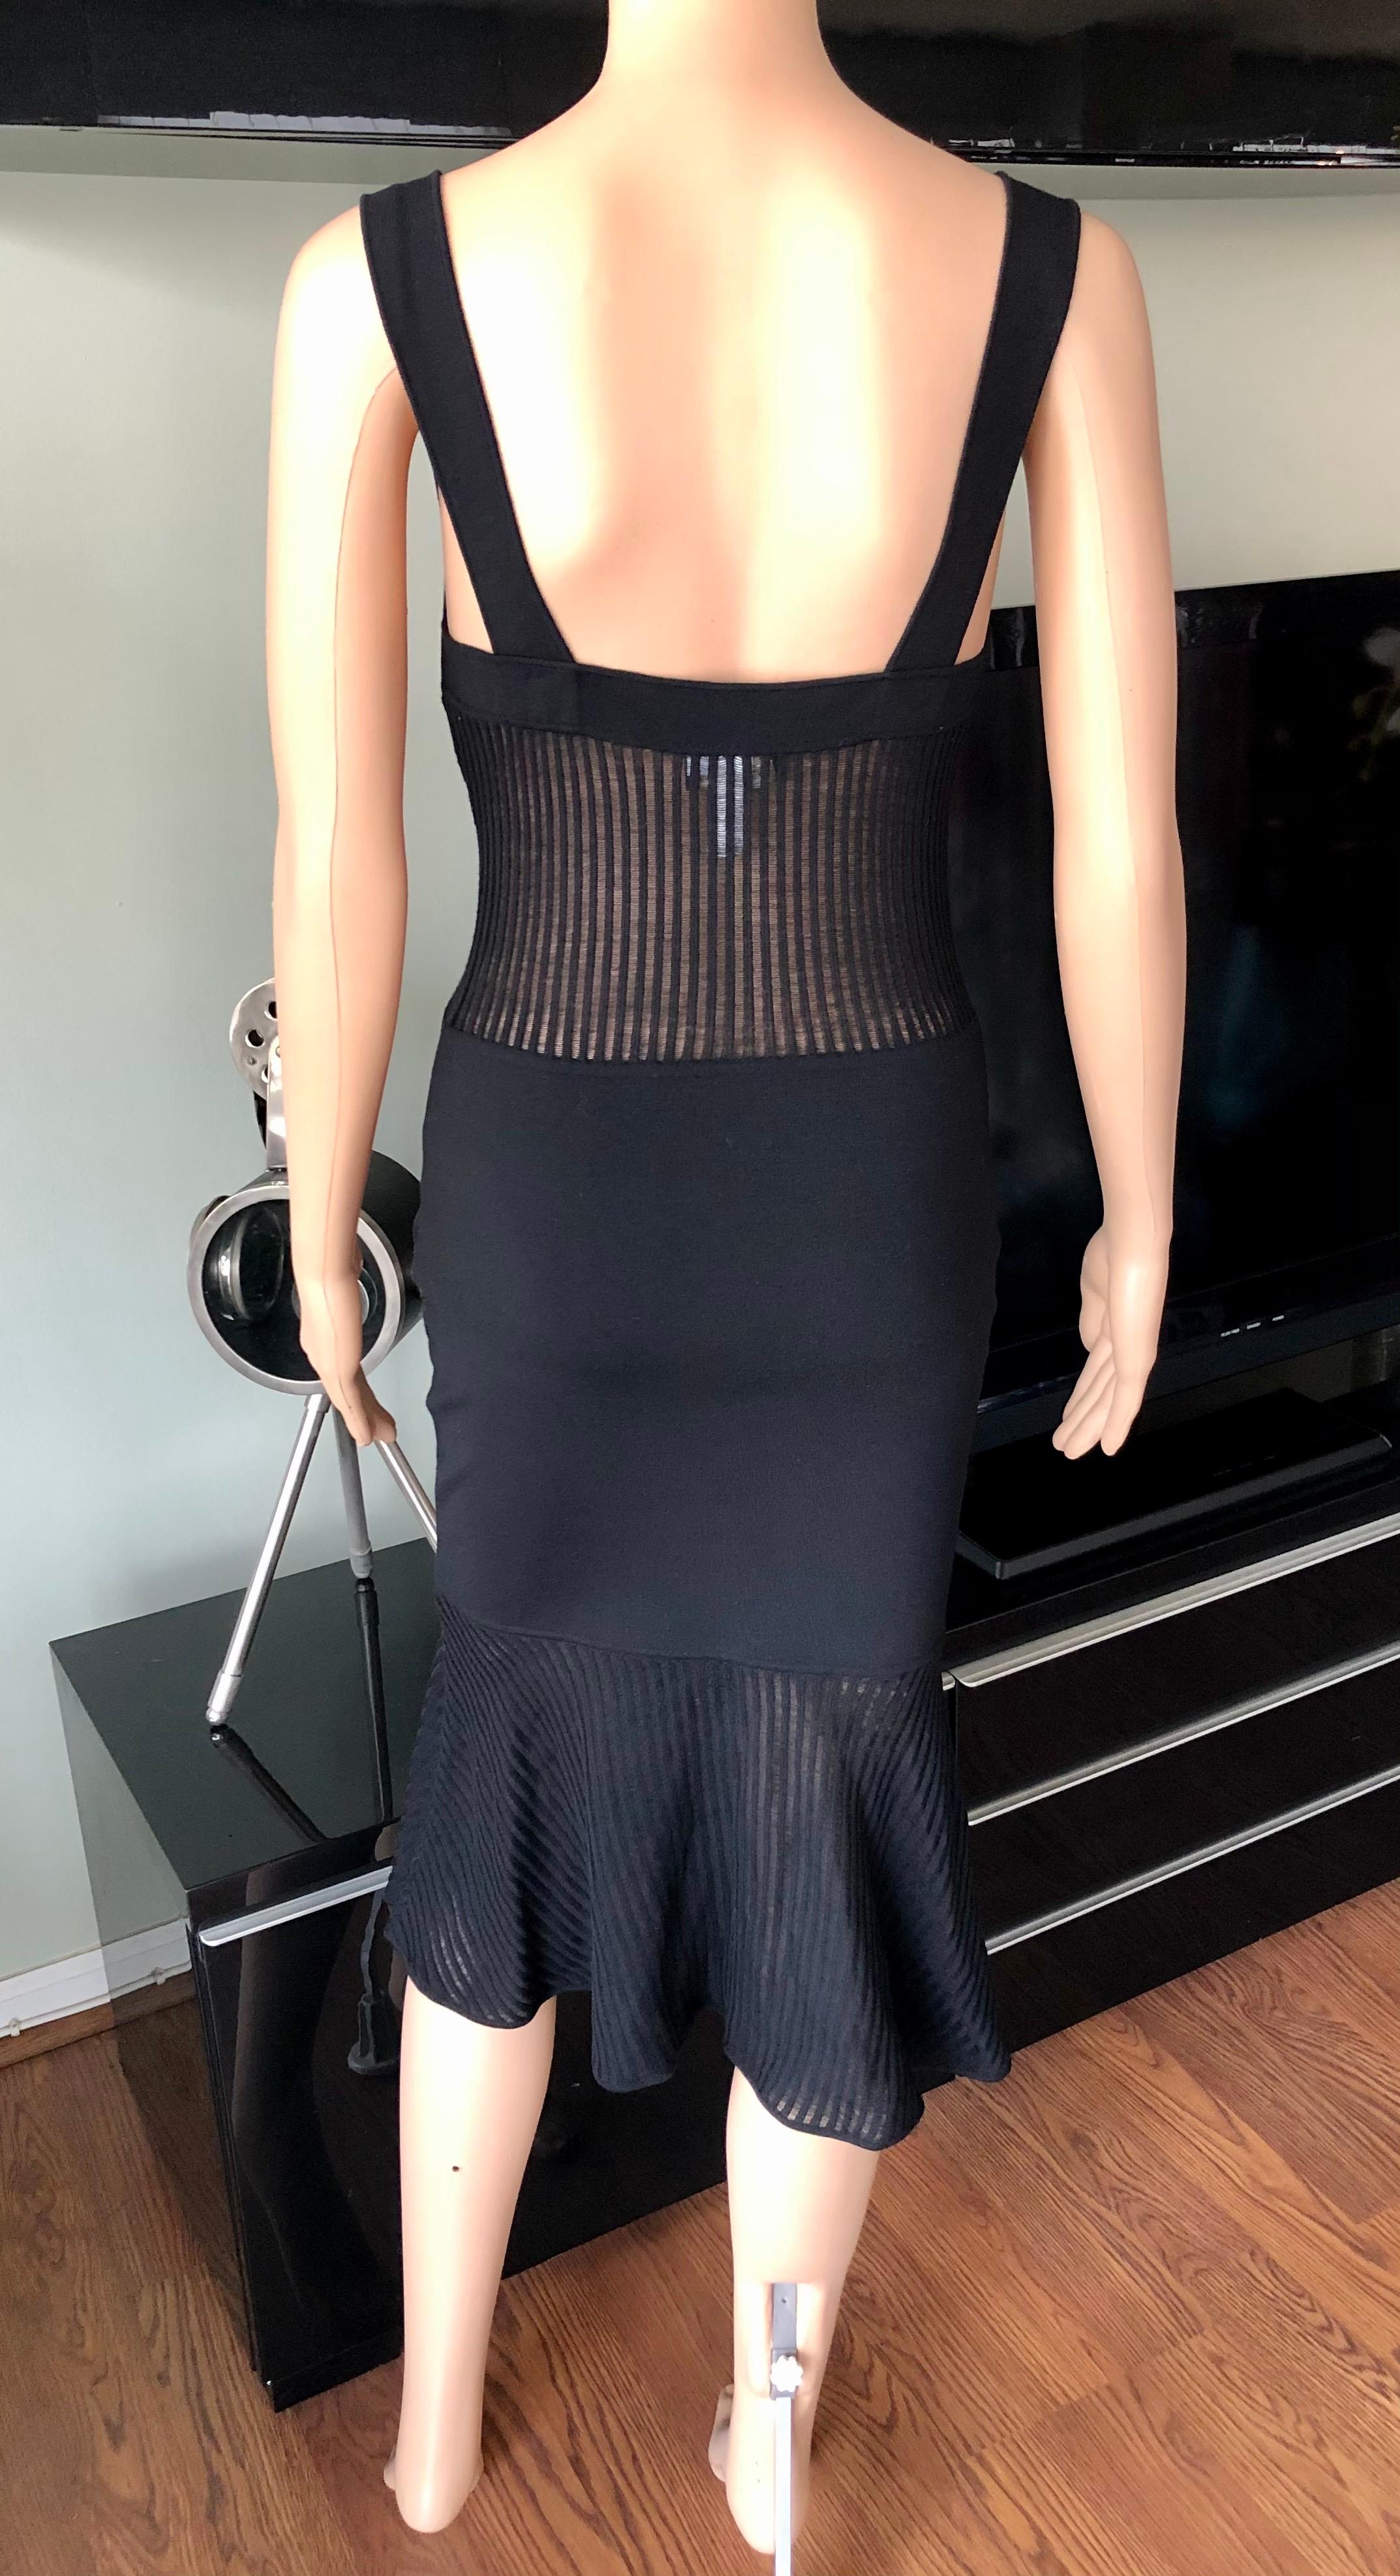 Gianni Versace 1990’s Vintage Sheer Knit Black Dress For Sale 2